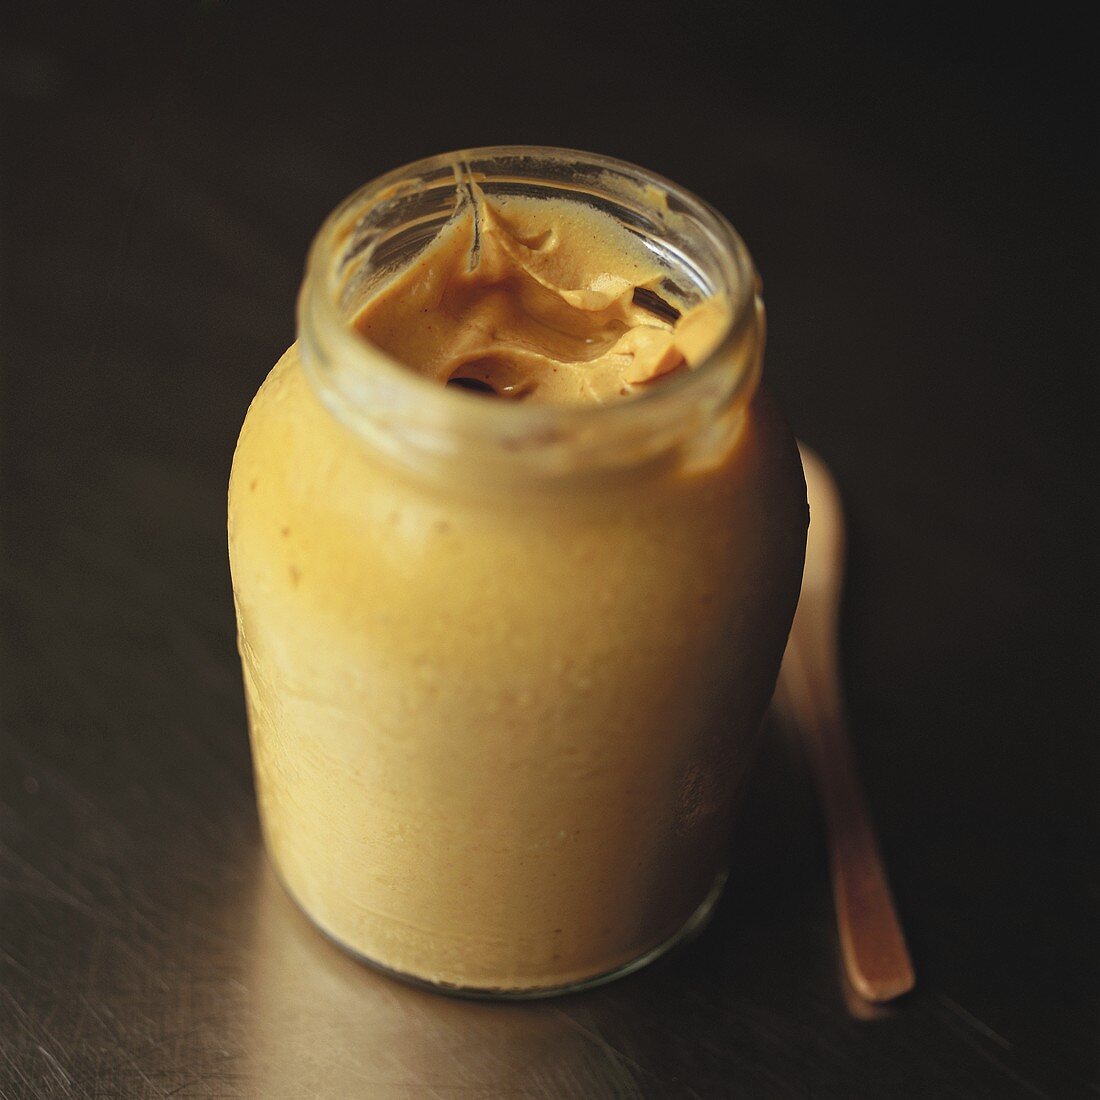 A jar of Dijon mustard